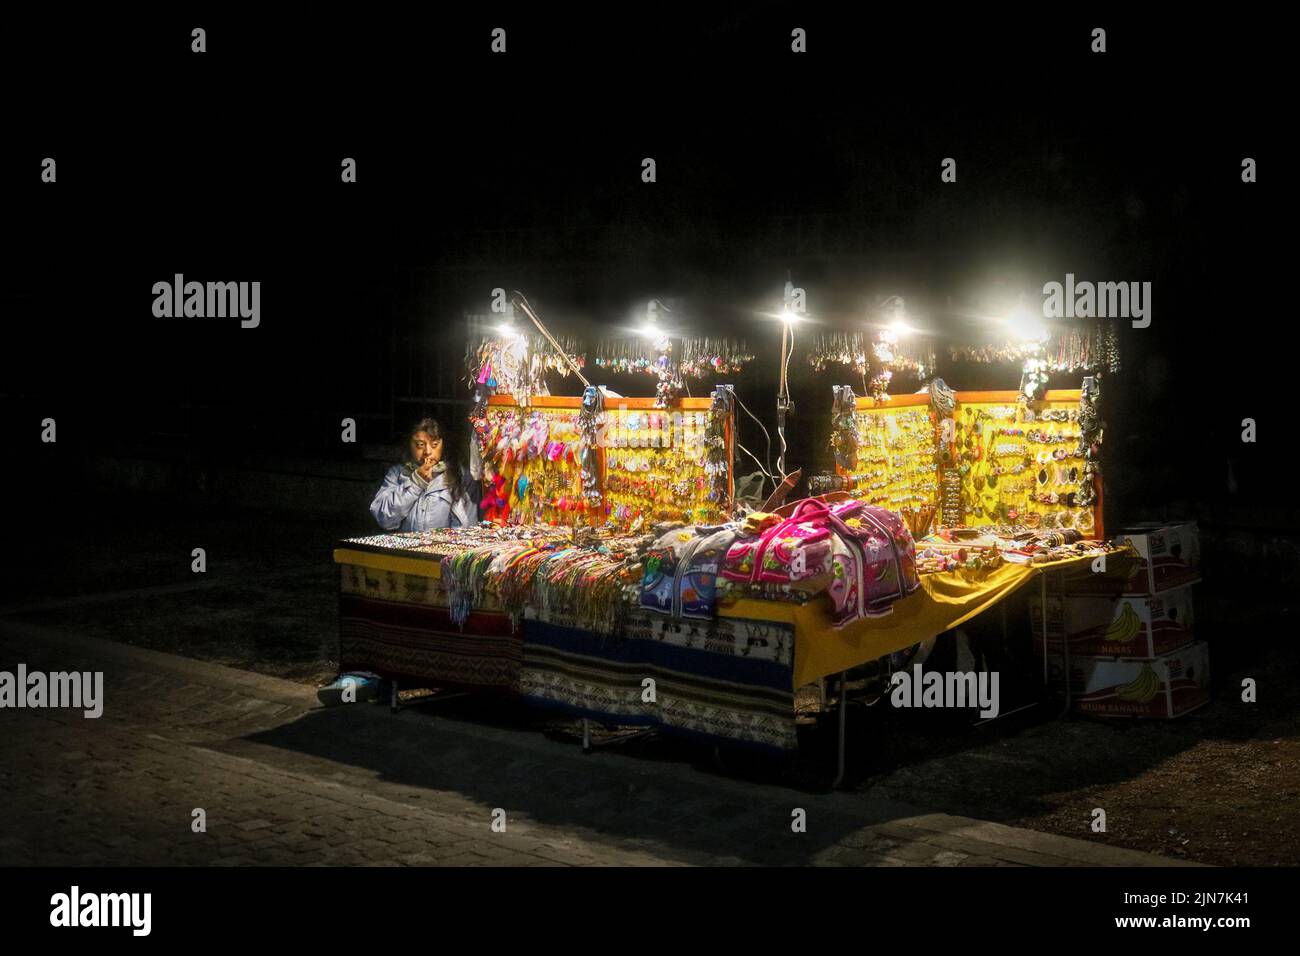 Vendedor sentado en una mesa al aire libre iluminada mostrando joyas y otros recuerdos por la noche en Atenas, Grecia Foto de stock